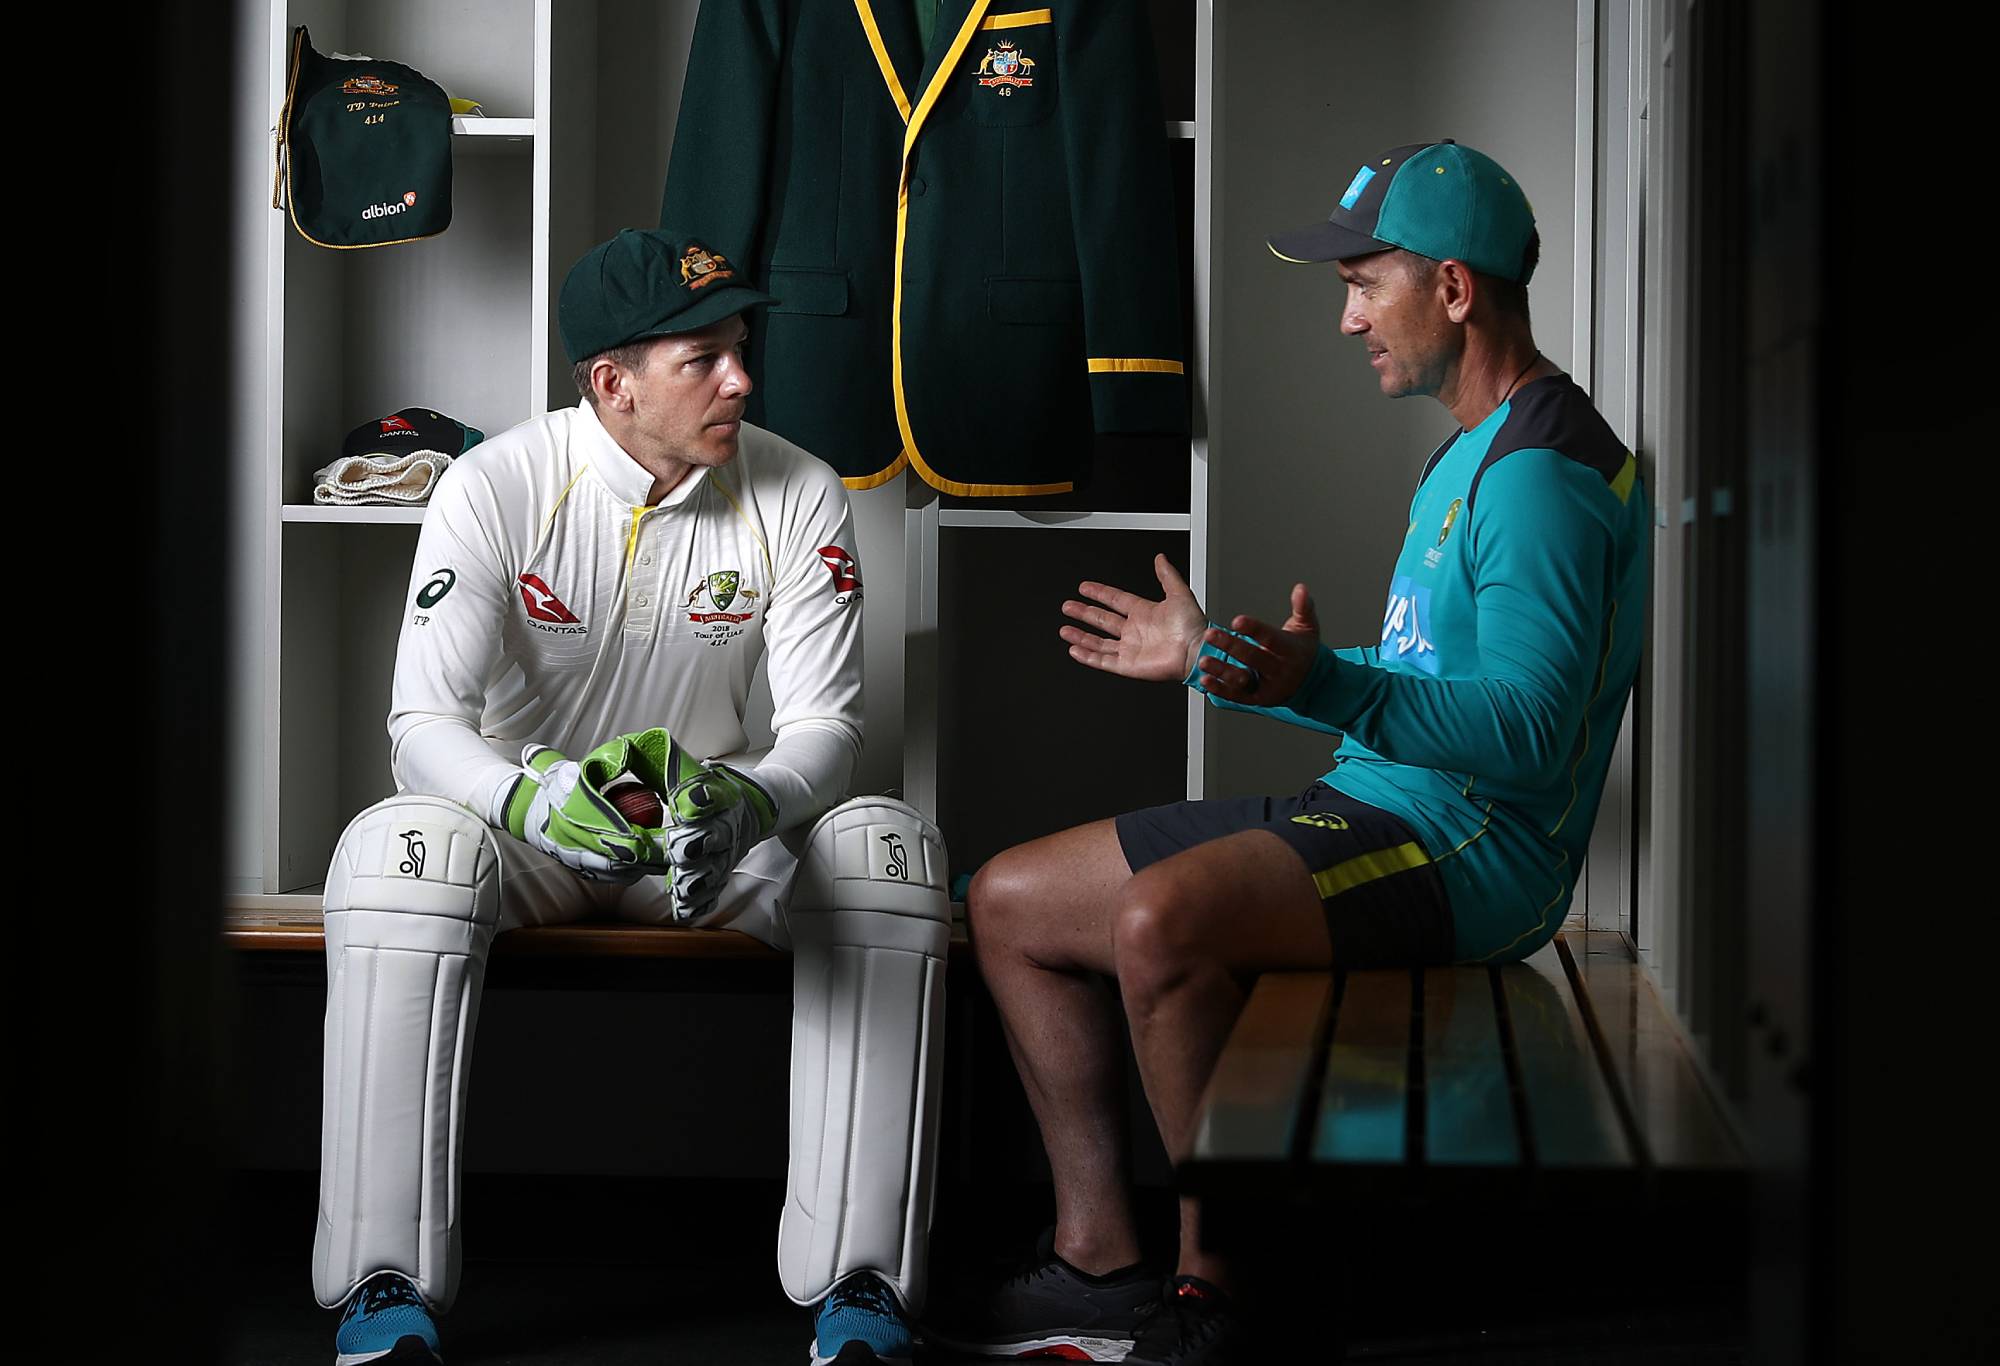 El capitán de críquet australiano Tim Paine y Justin Langer, entrenador de Australia, posan durante una sesión de retratos en la Academia ICC el 5 de octubre de 2018 en Dubái, Emiratos Árabes Unidos.  (Foto de Ryan Pierse/Getty Images)